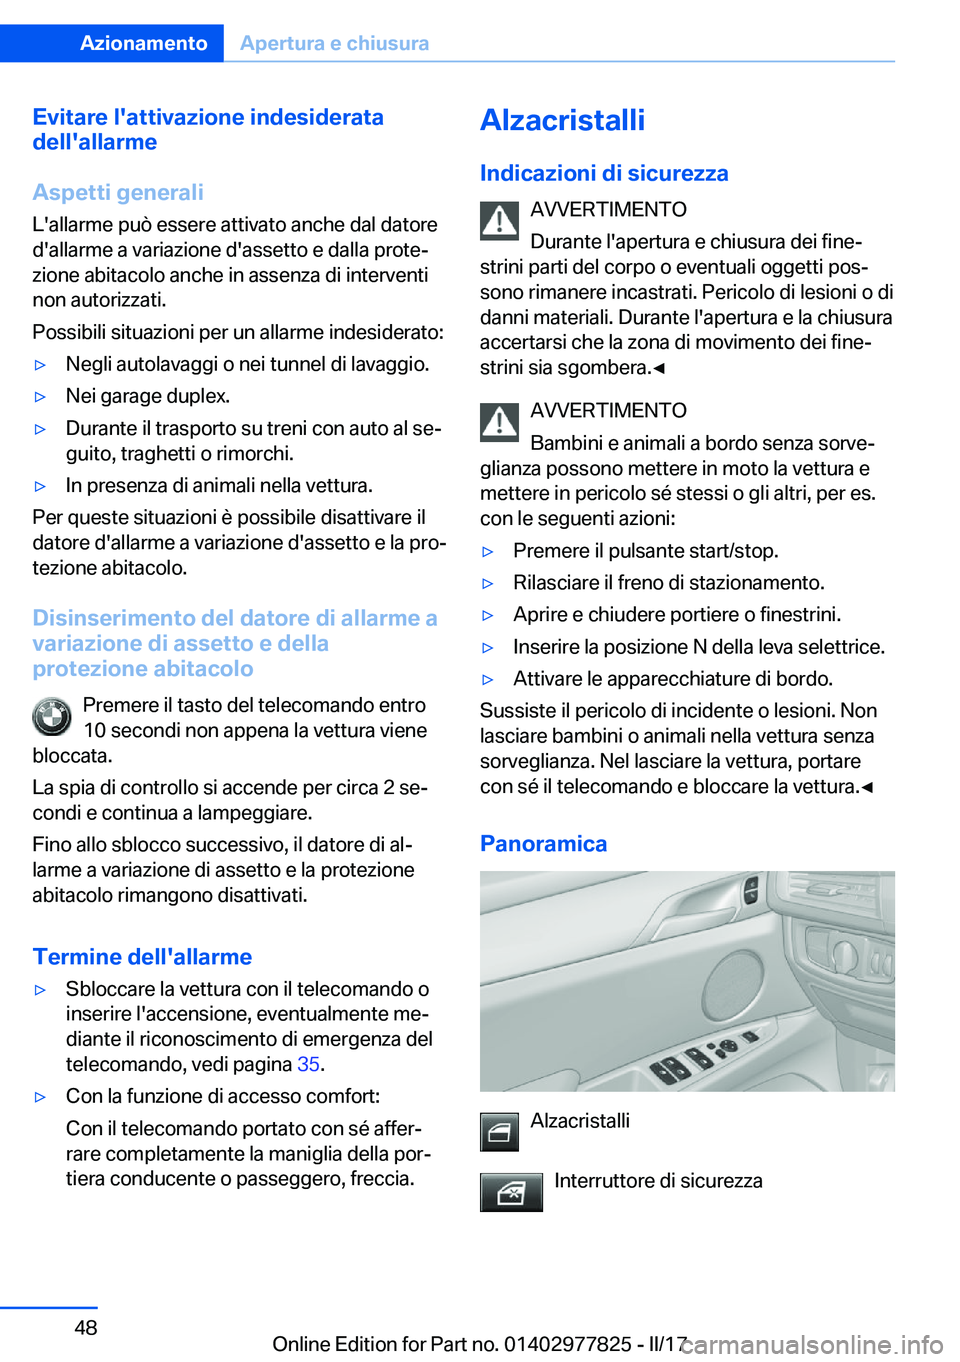 BMW X3 2017  Libretti Di Uso E manutenzione (in Italian) �E�v�i�t�a�r�e��l�'�a�t�t�i�v�a�z�i�o�n�e��i�n�d�e�s�i�d�e�r�a�t�a
�d�e�l�l�'�a�l�l�a�r�m�e
�A�s�p�e�t�t�i��g�e�n�e�r�a�l�i �L�'�a�l�l�a�r�m�e� �p�u�ò� �e�s�s�e�r�e� �a�t�t�i�v�a�t�o� 